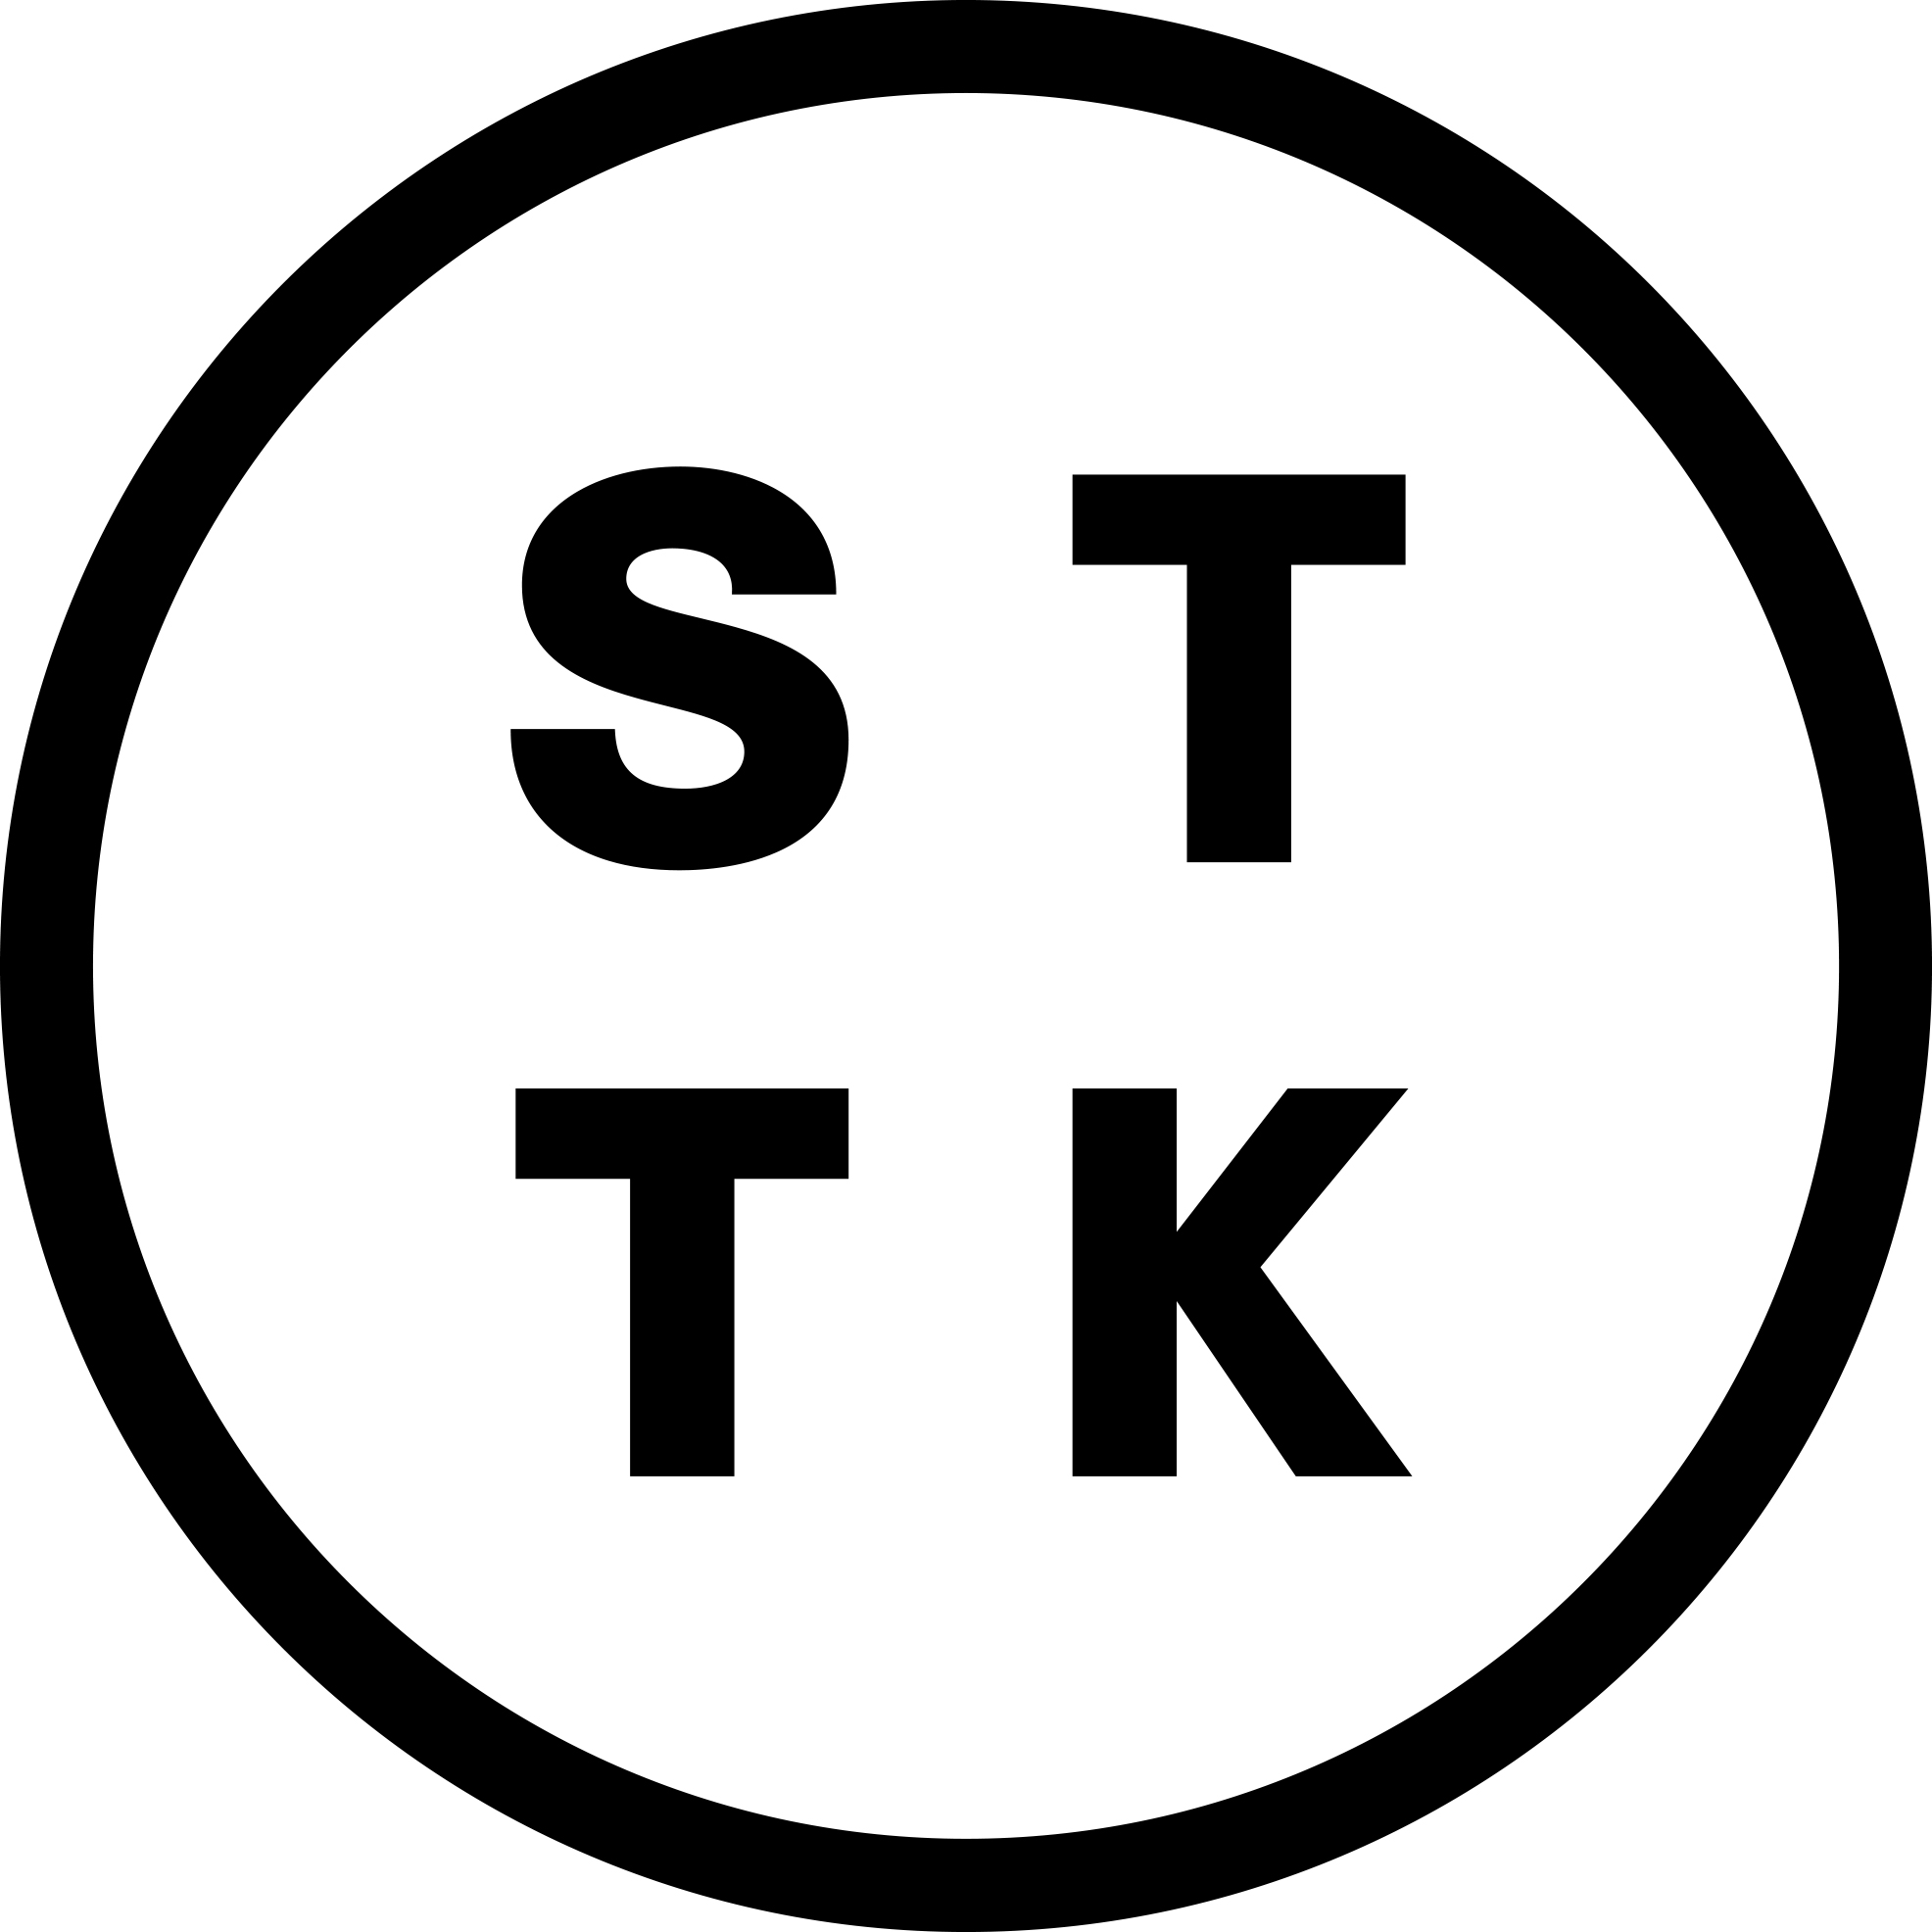 STTK:n logossa on mustalla viivalla piirretty ympyrä, jonka keskellä lukee STTK.